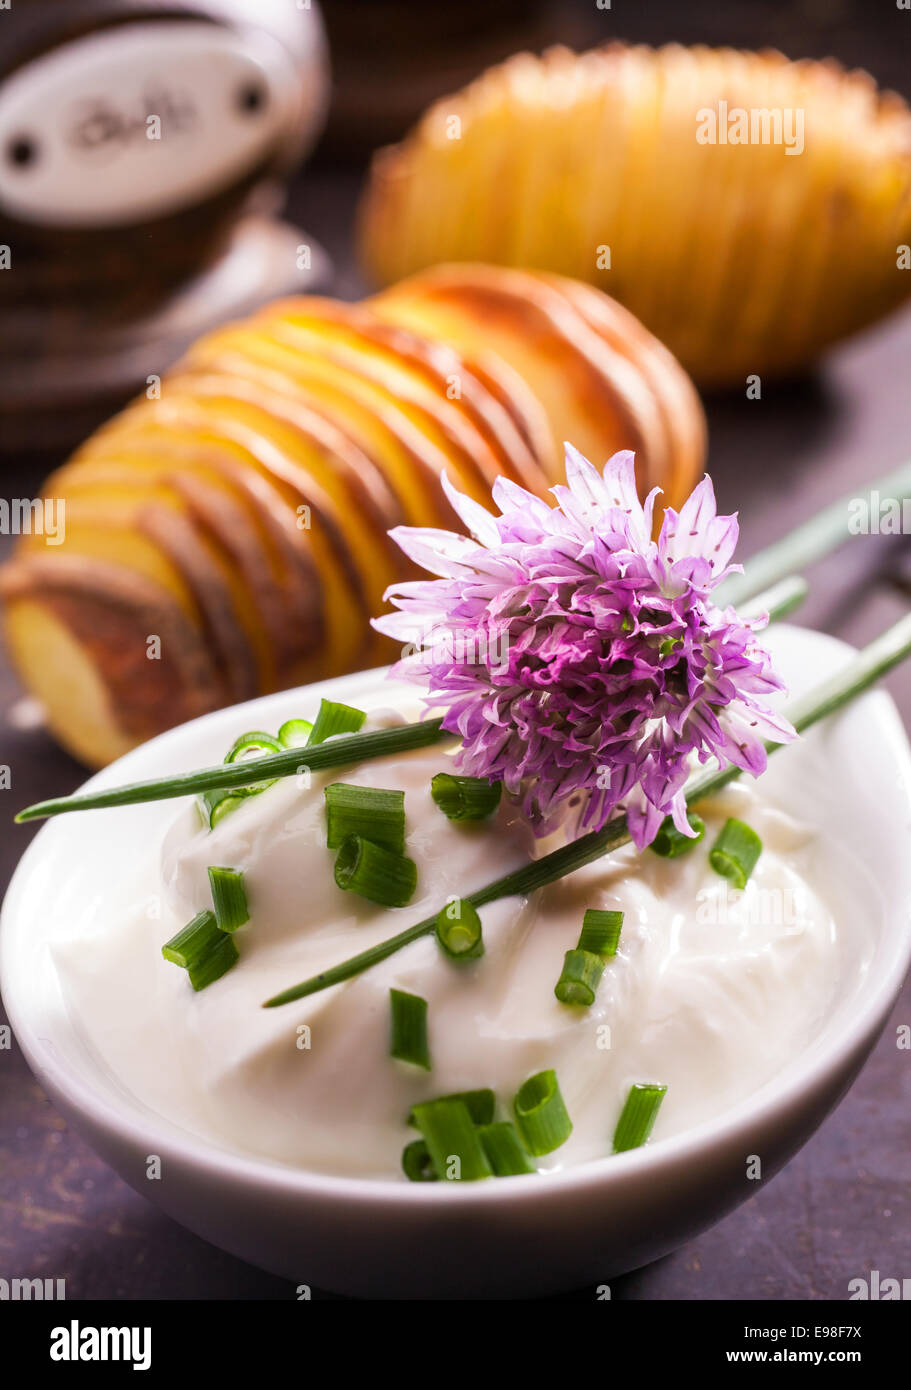 Le foglie fresche e fiore di una pianta di erba cipollina, Allium schoenoprasum, un popolare potherb utilizzato come aromatizzante e guarnire in cucina e insalate per la sua onion-come gusto Foto Stock